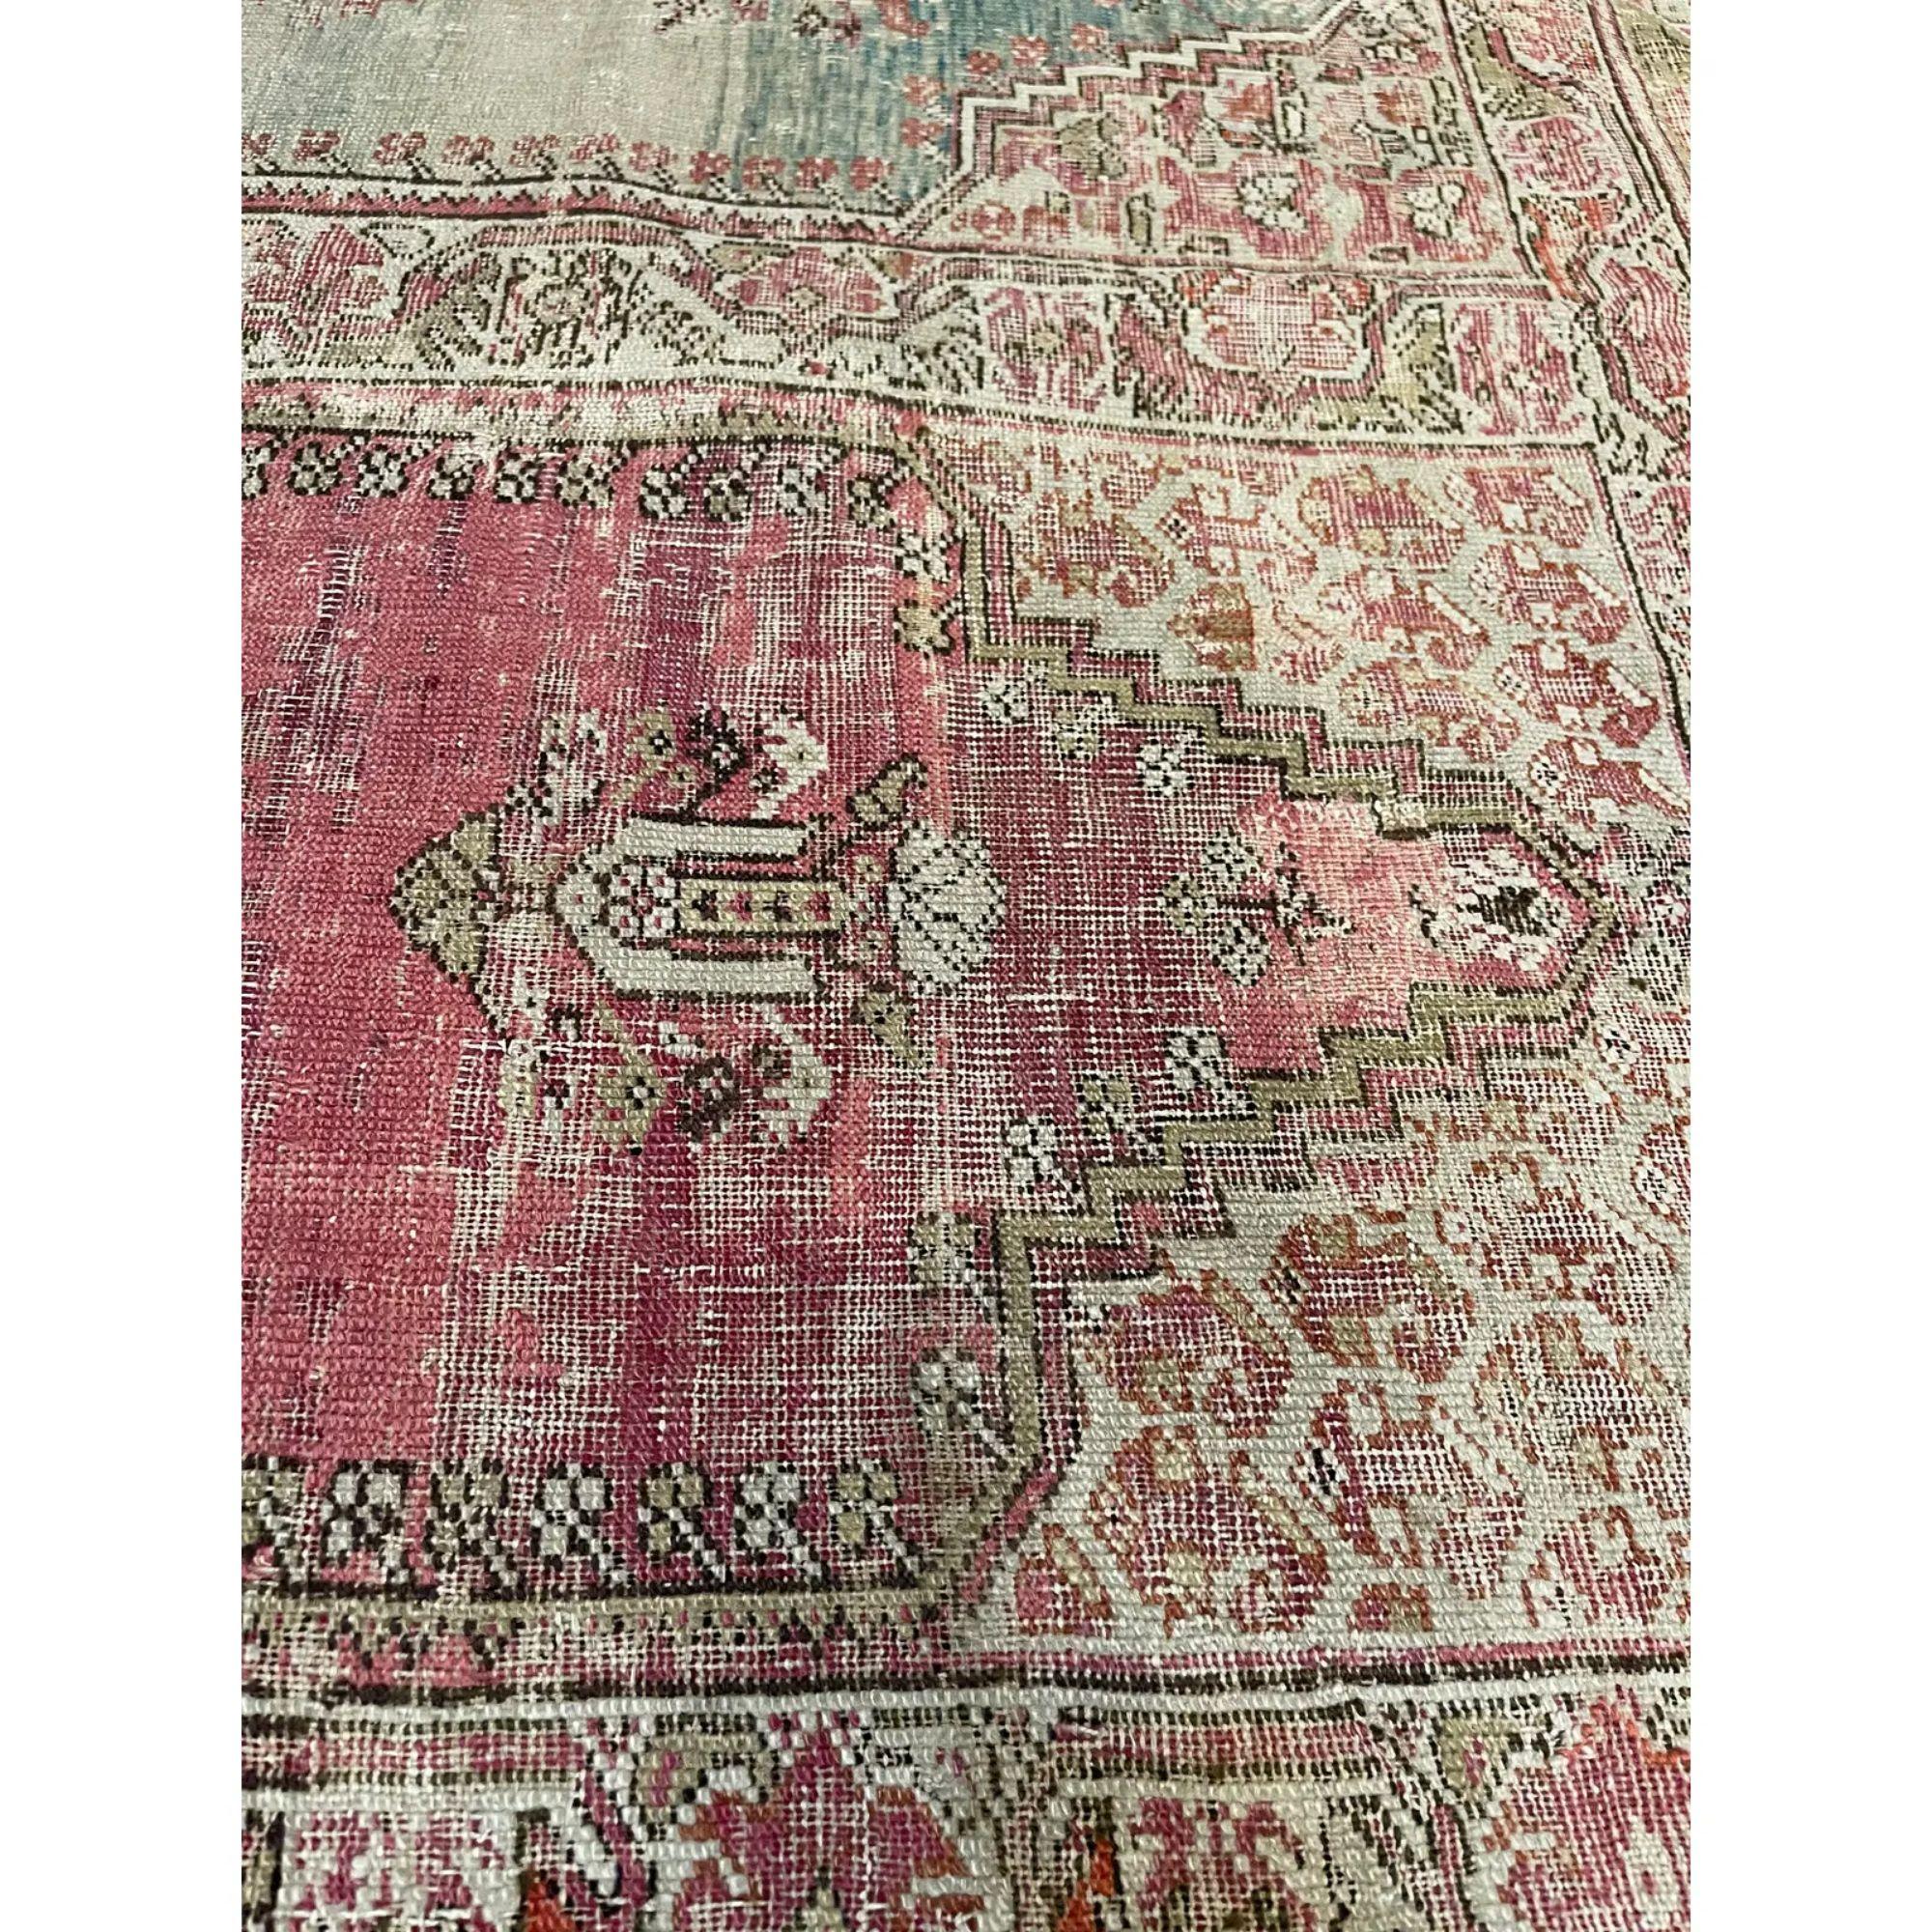 Ancien tapis de prière familial turc de 1850 10'5''x8'1''

un seul exemplaire 1 sur 1

Plus d'informations sur demande